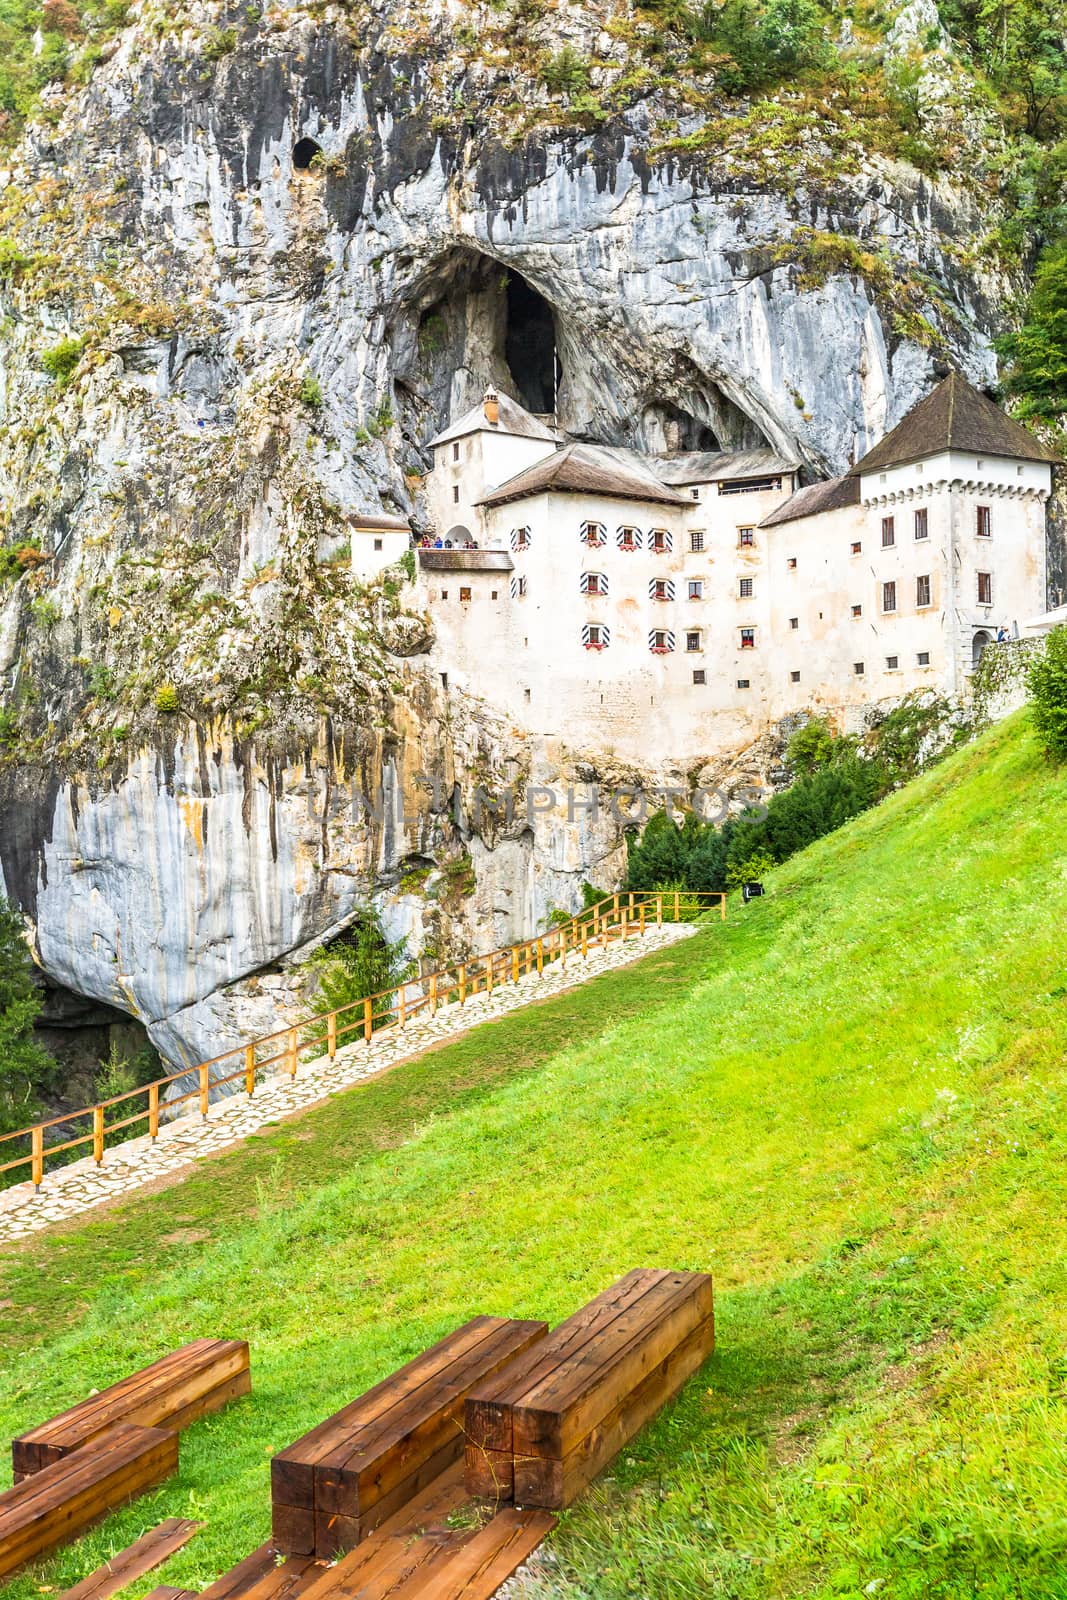 Predjama Castle in Slovenia. Predjama, approximately 9 kilometres from Postojna Cave.